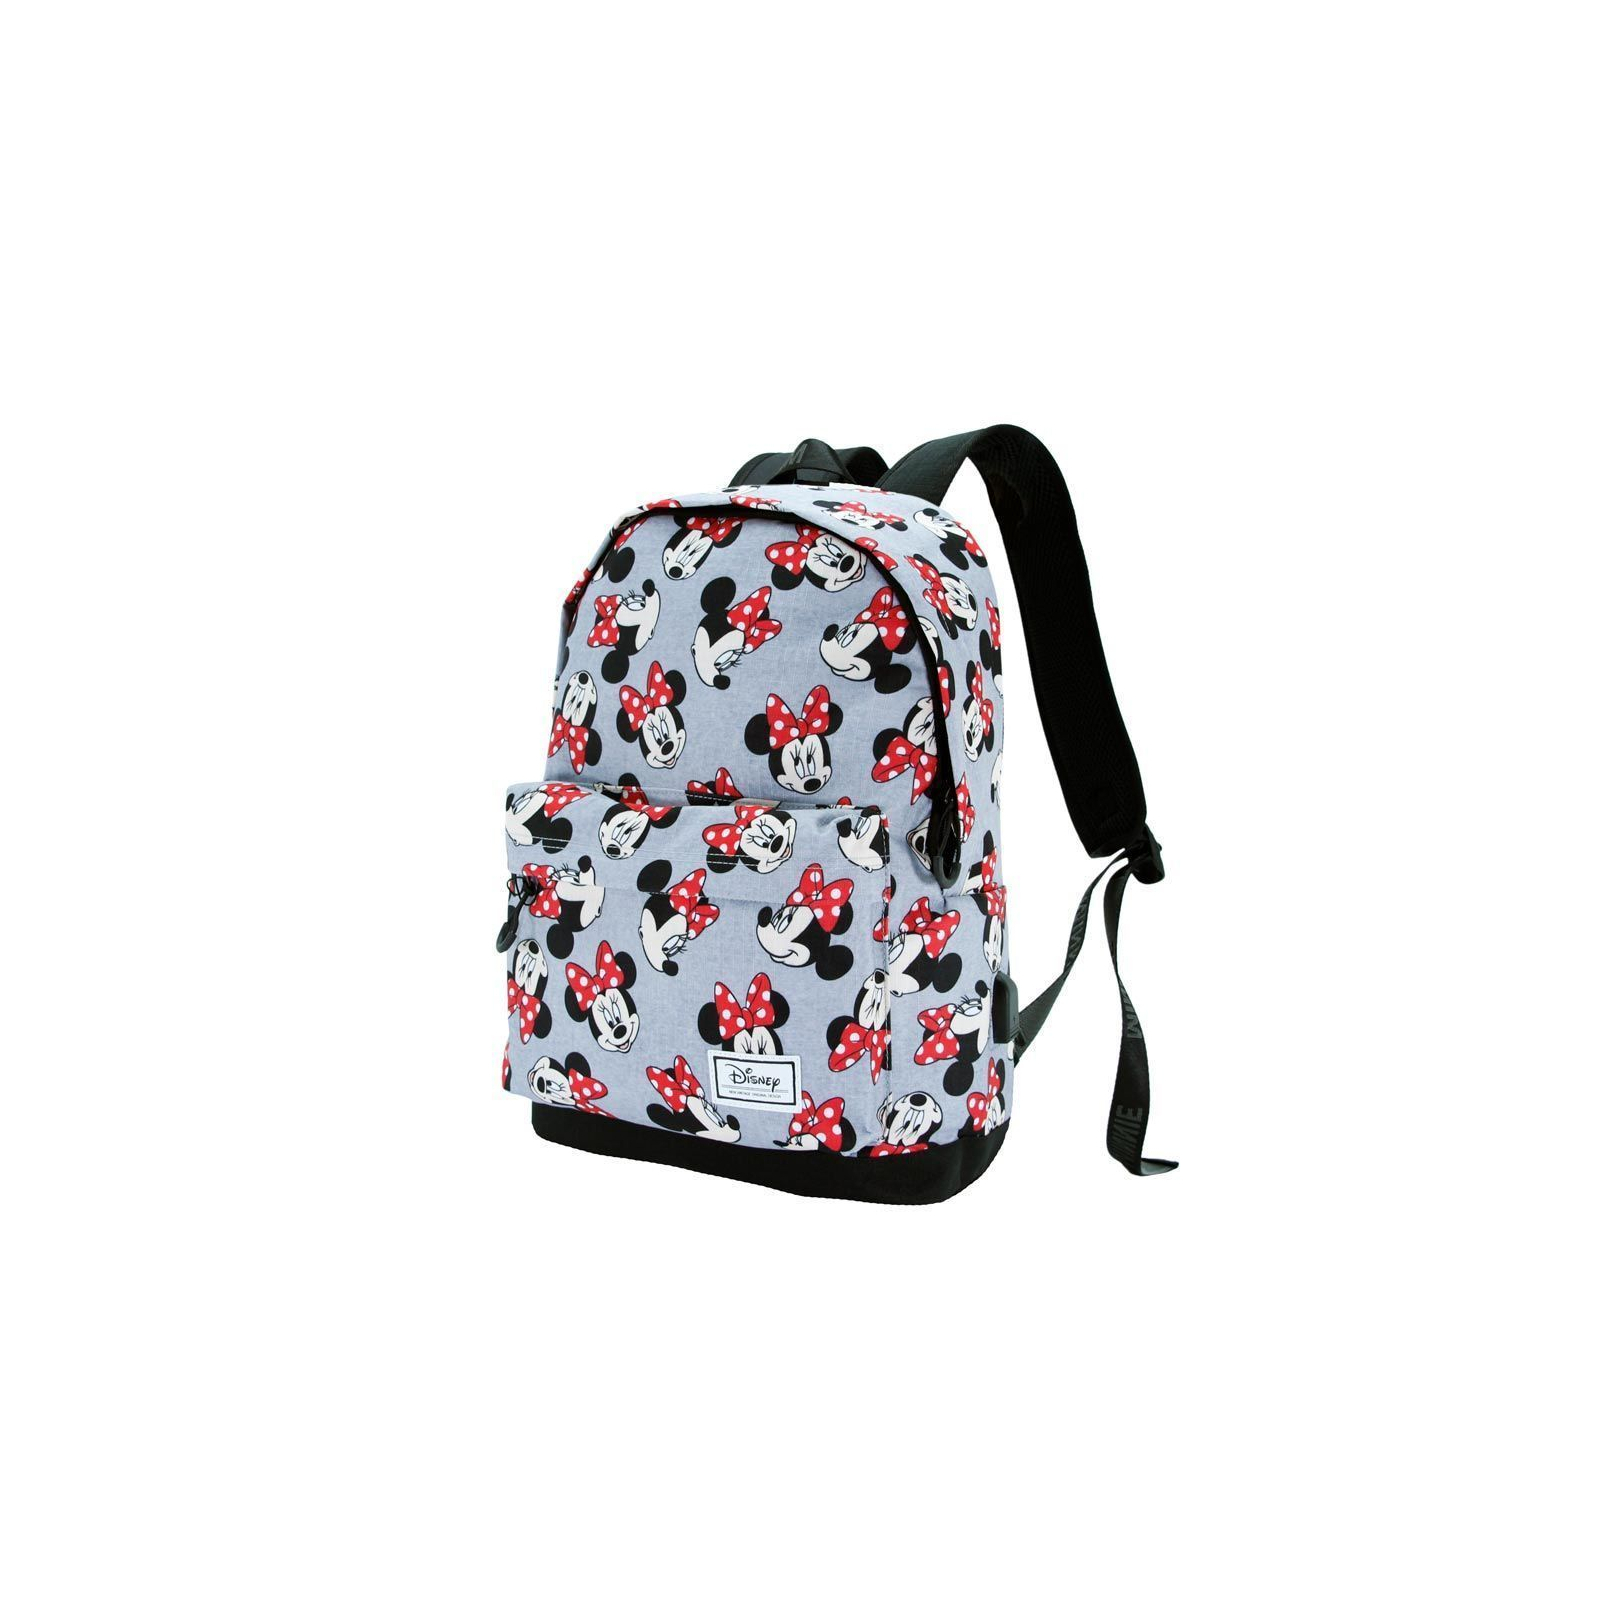 Рюкзак школьный KaracterMania Minnie HS Backpack 1.3 Kind (KRCM-02930) изображение 2